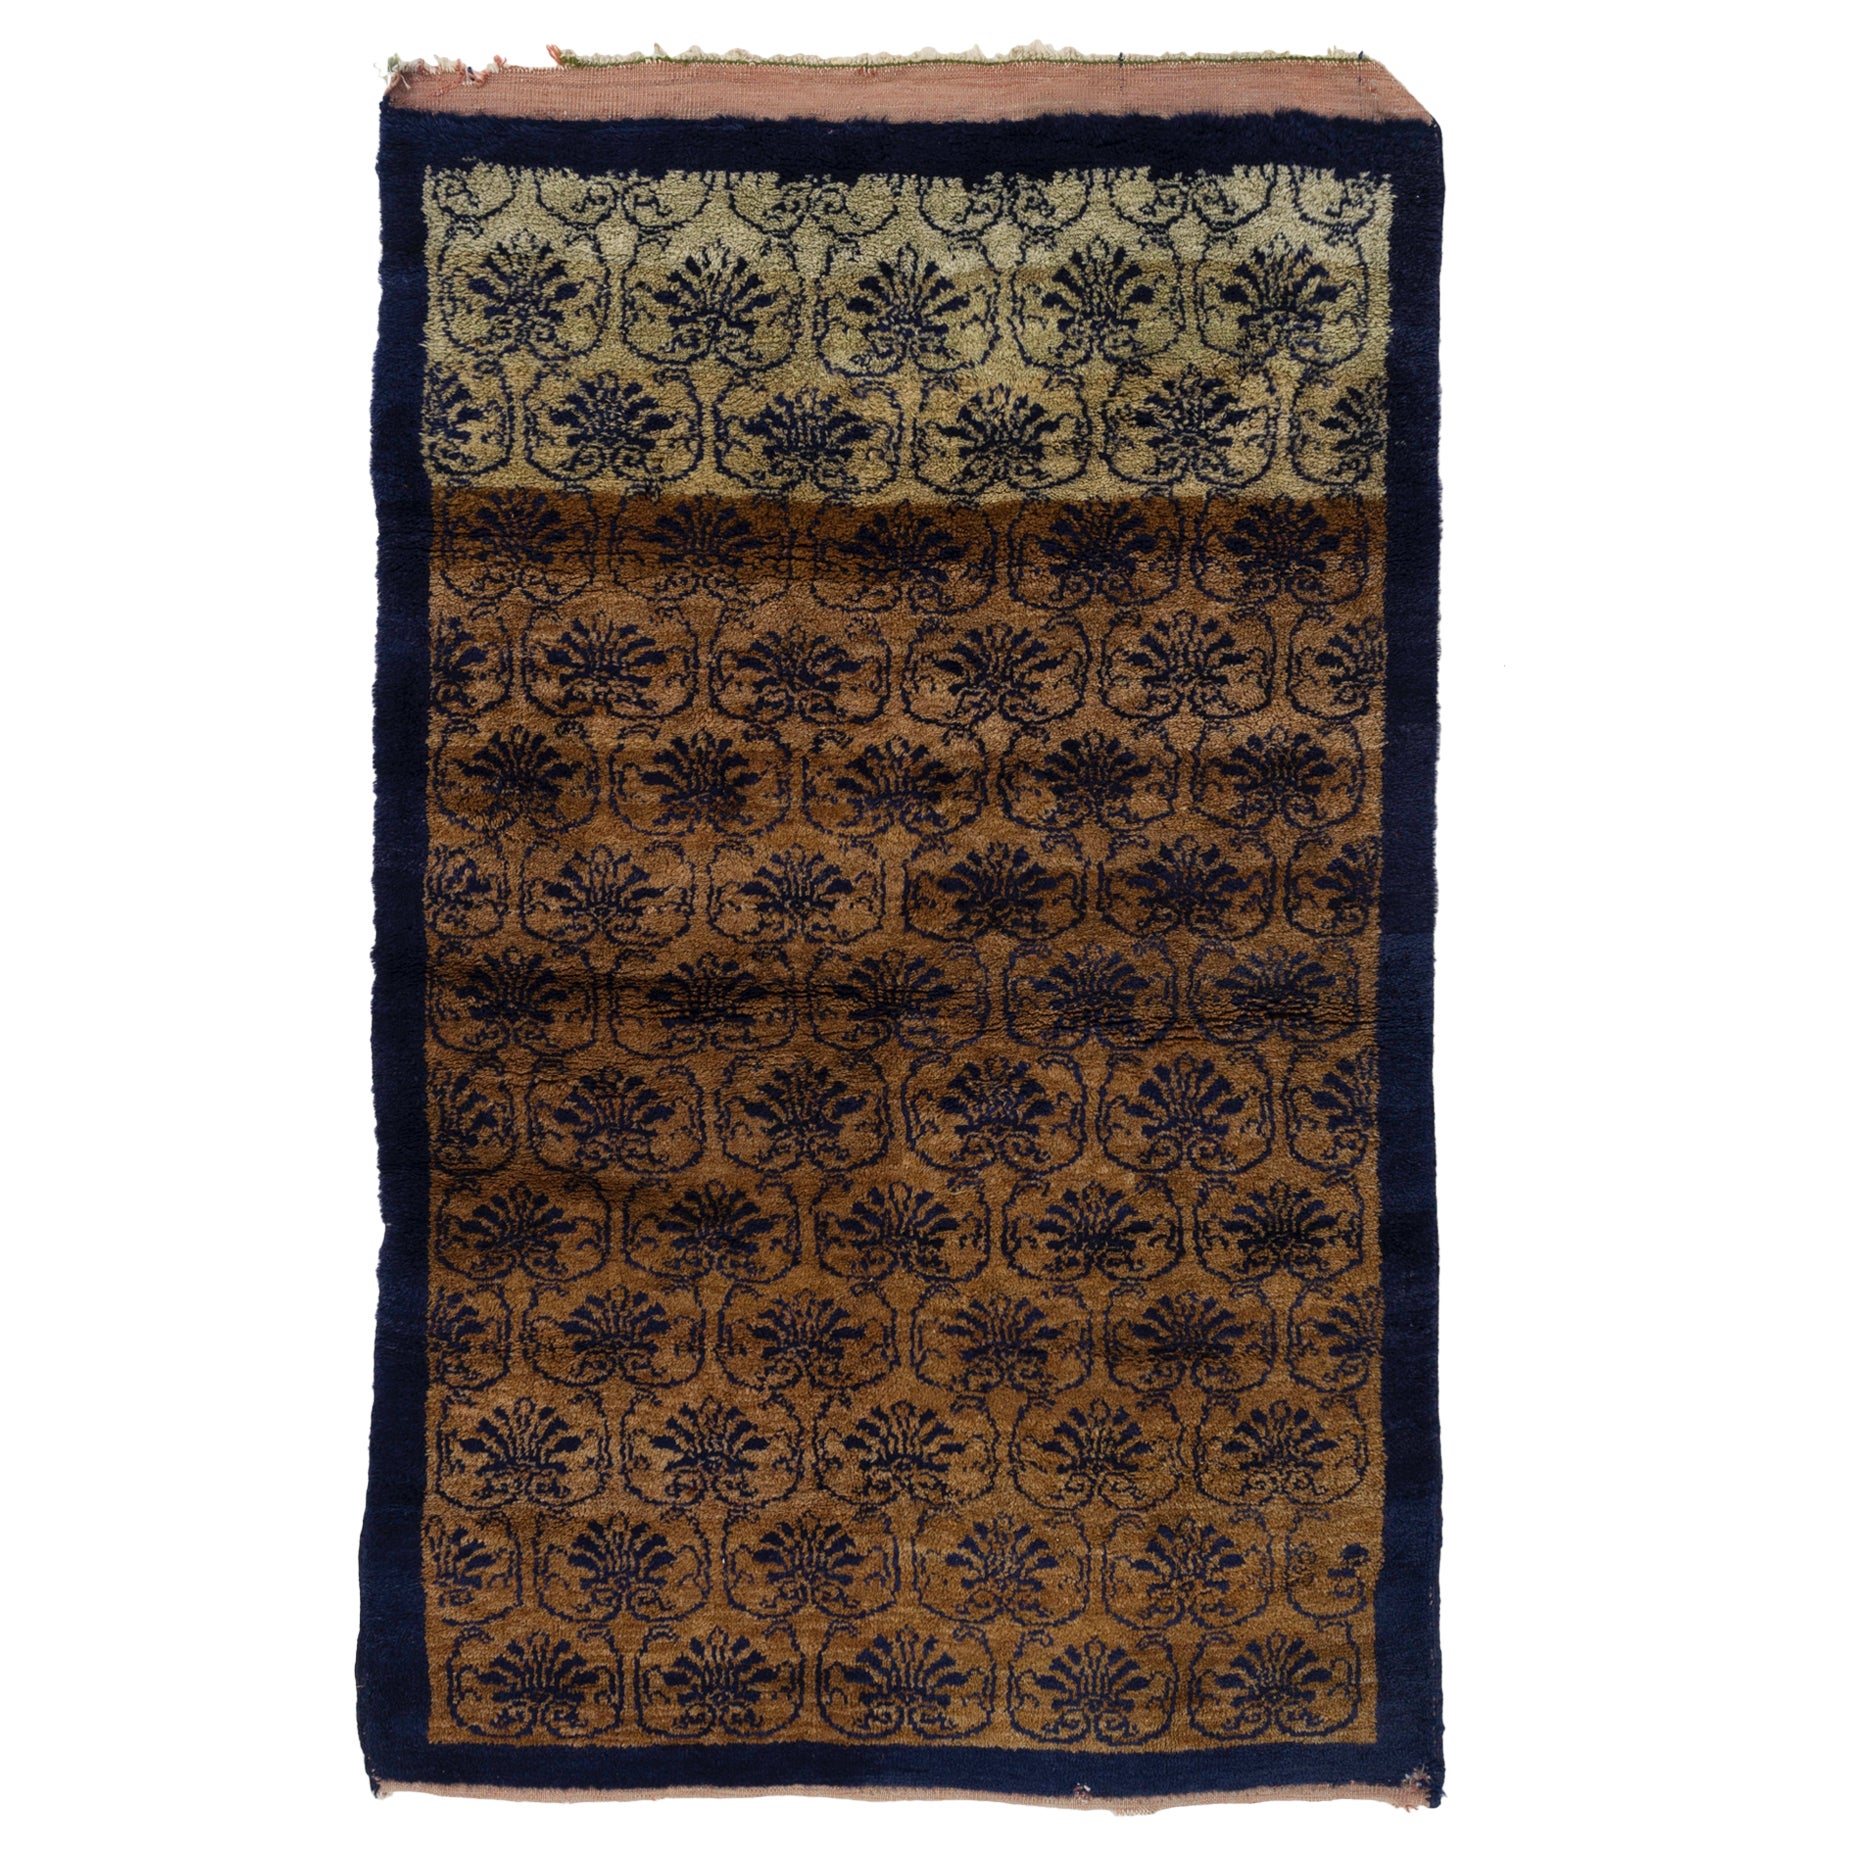 3.8x6 Ft Vintage Handgefertigter einzigartiger türkischer Tulu-Teppich in Kamel und Marineblau, alle Wolle